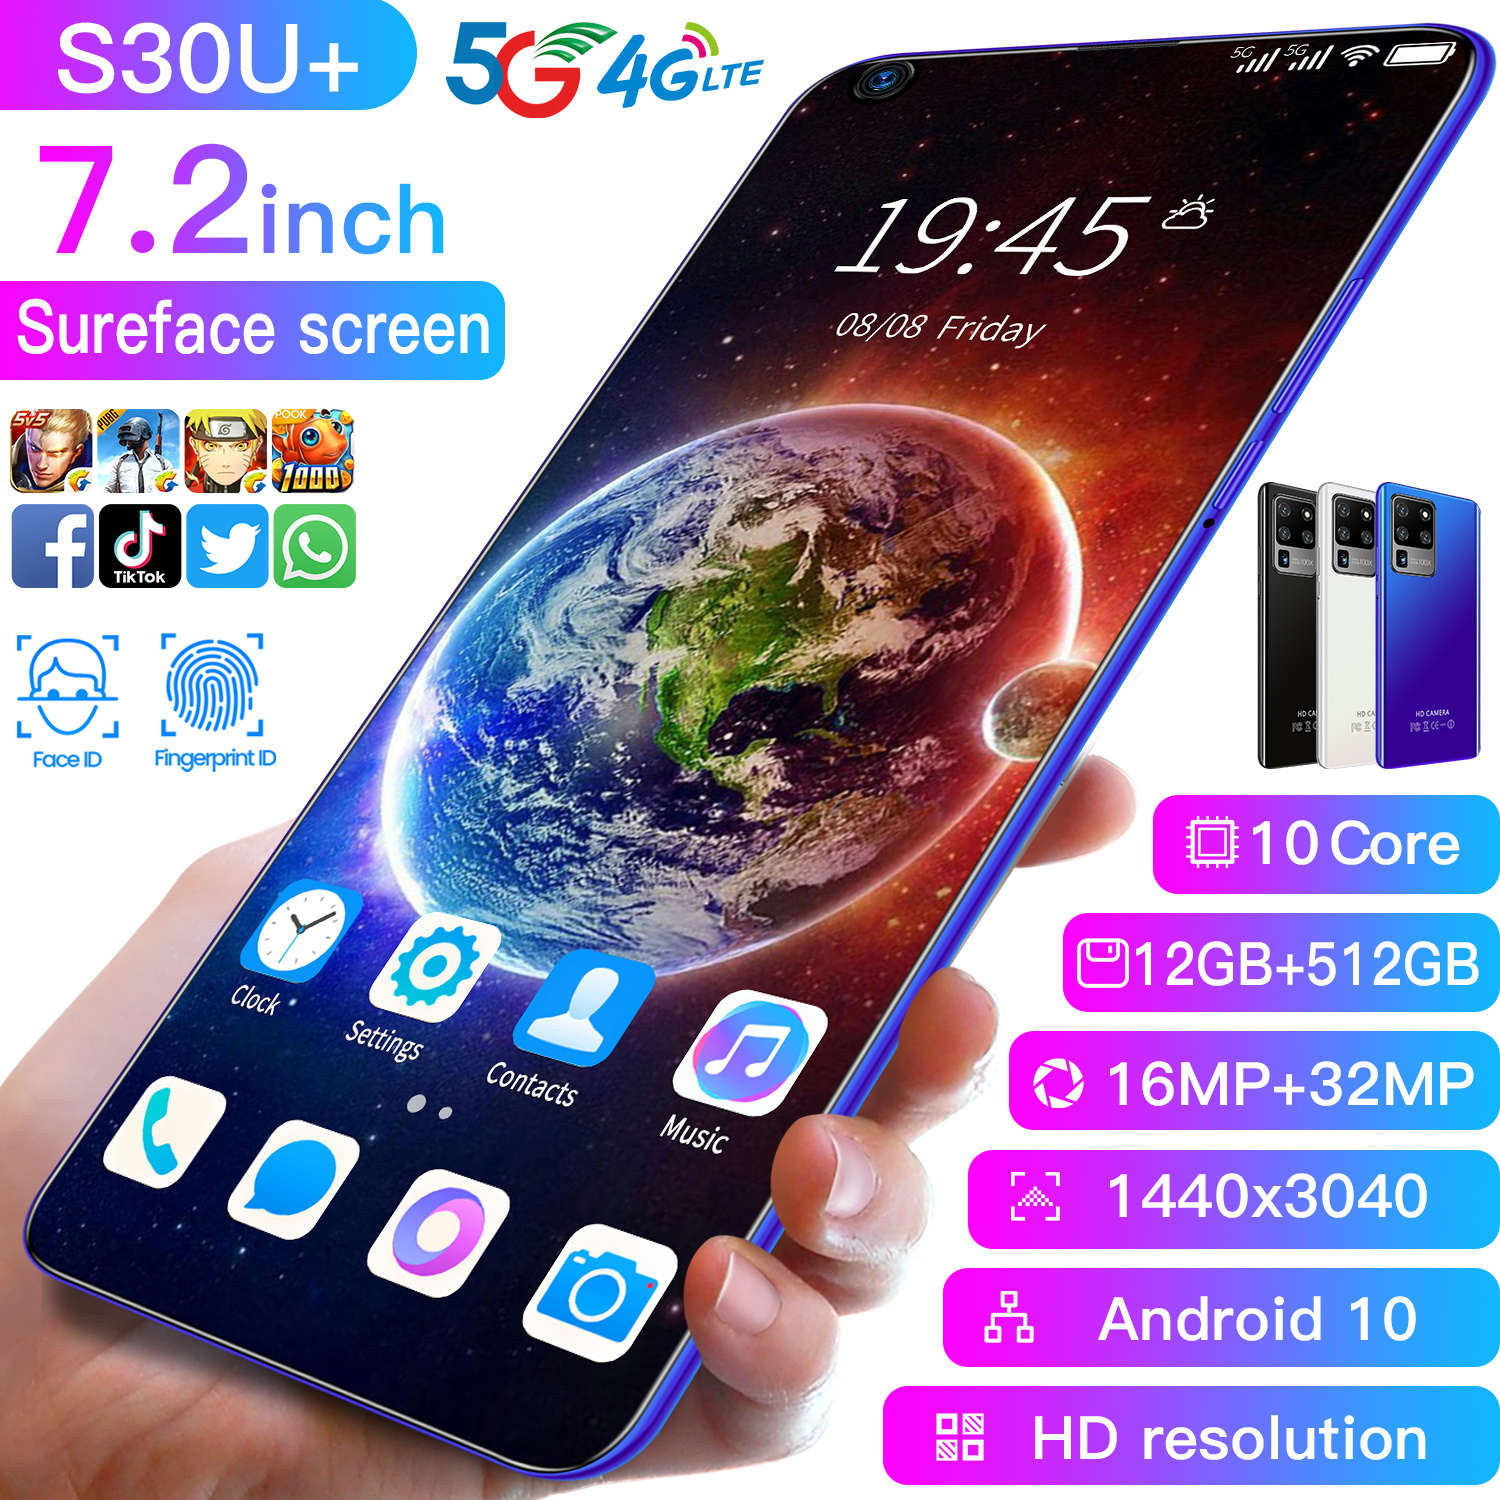 โทรศัพท์มือถือ Sansumg S30u Plus 7.2นิ้ว 12G+512G Full HD กล้องหน้า 24MPกล้องหลัง 48MP แบตฯอึด 4,800mAh ปลดล็อกด้วยใบหน้า ใช้แอพธนาคารได้